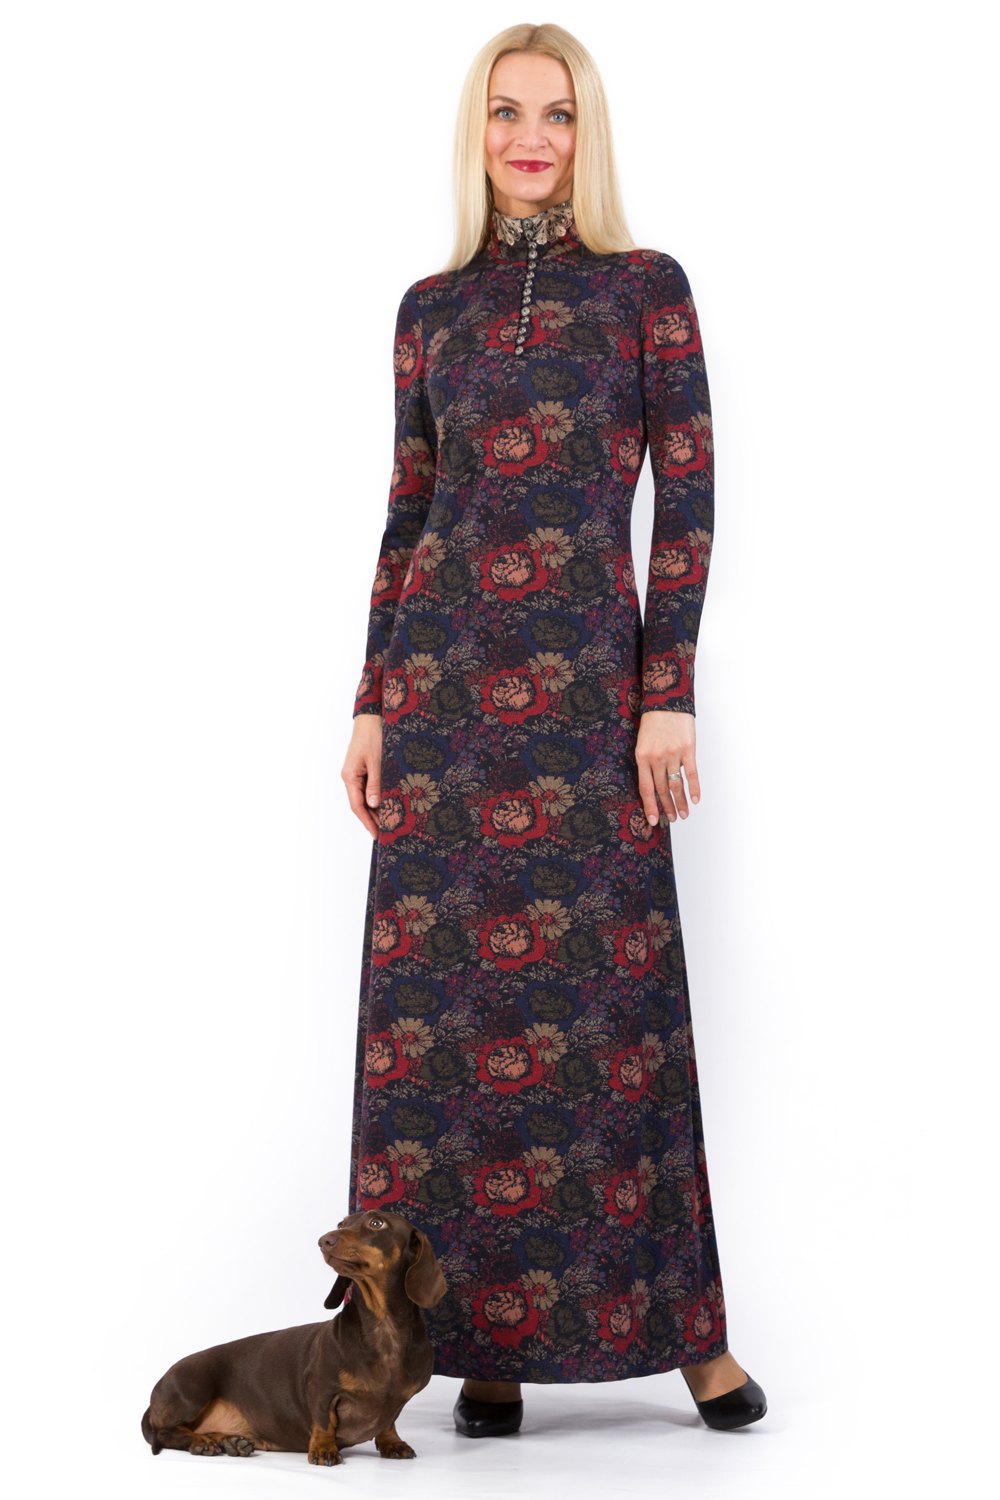 Платье женское "Вернисаж" длинное с кружевом модель 754/1 красно-синие цветы